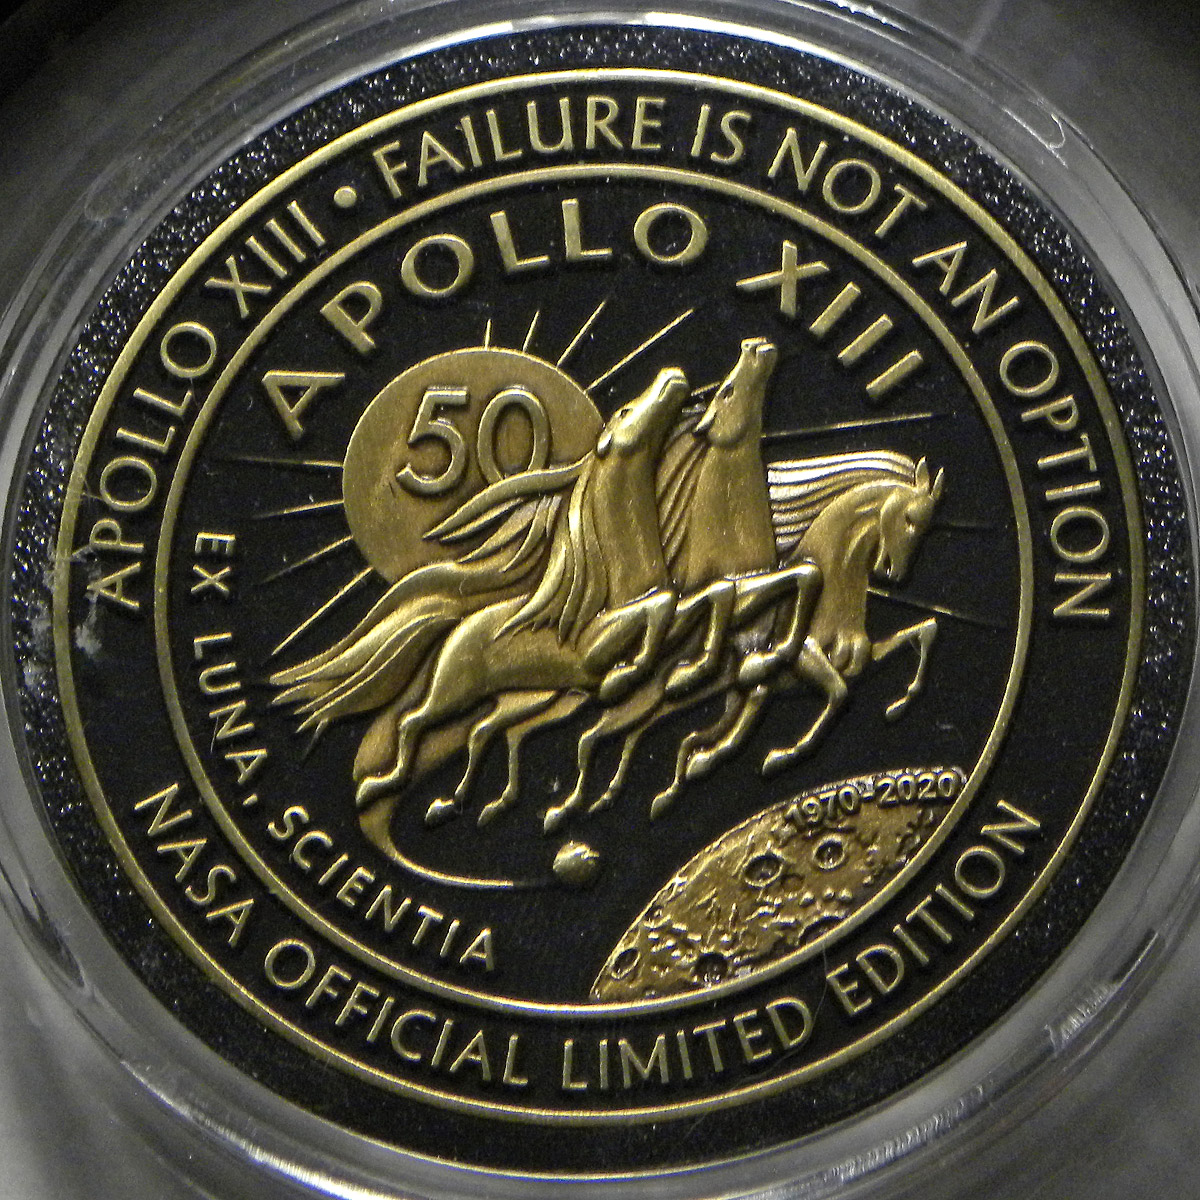 Project Apollo 50th anniversary medal: Apollo 13